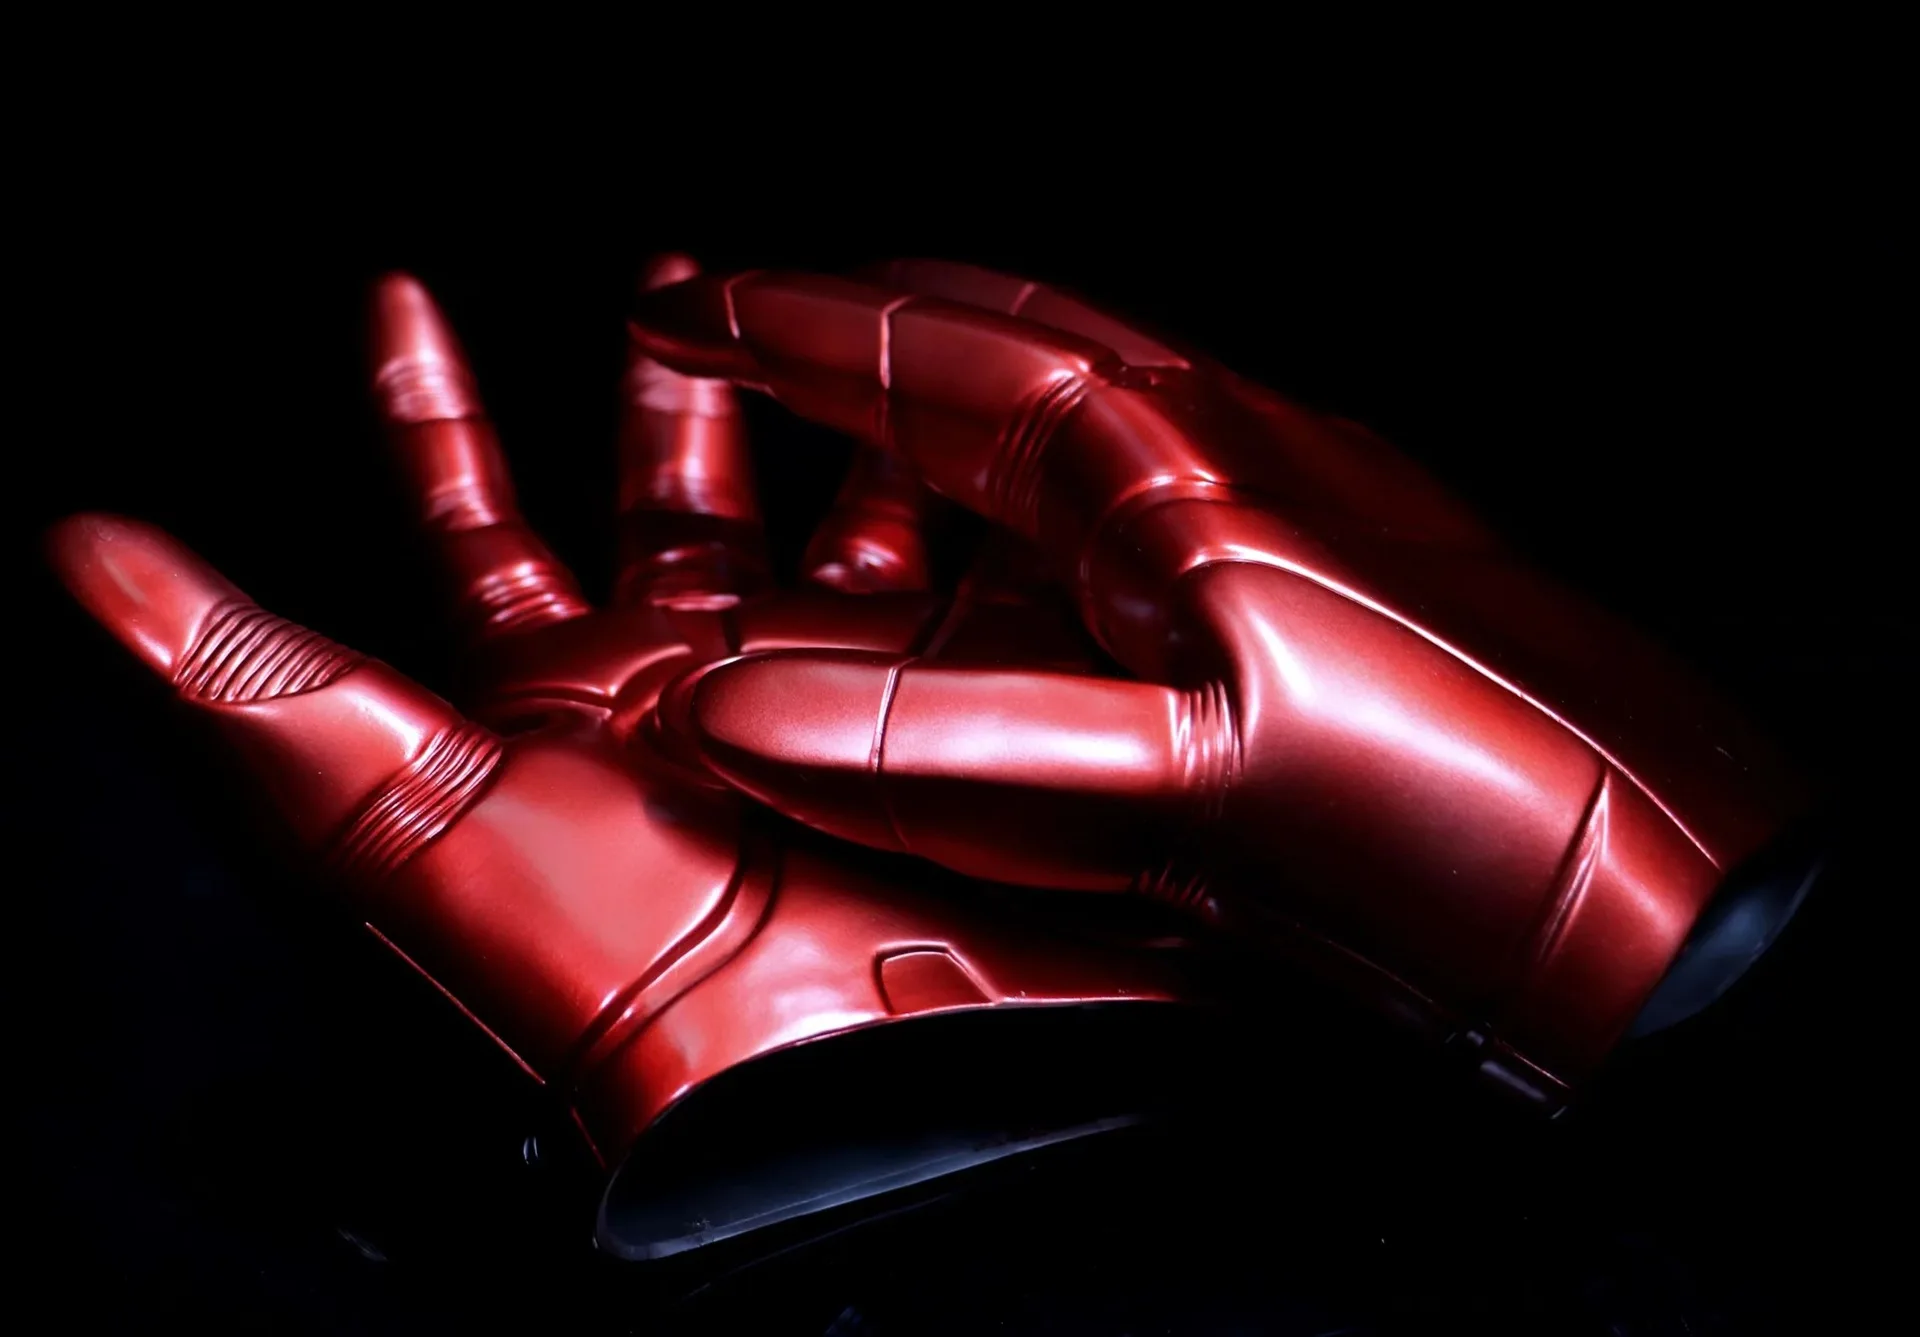 Marvel Мстители Железный человек светодиодный игрушечные перчатки фигурки Железный человек погремушки ПВХ коллекционные куклы для взрослых детей Подарки